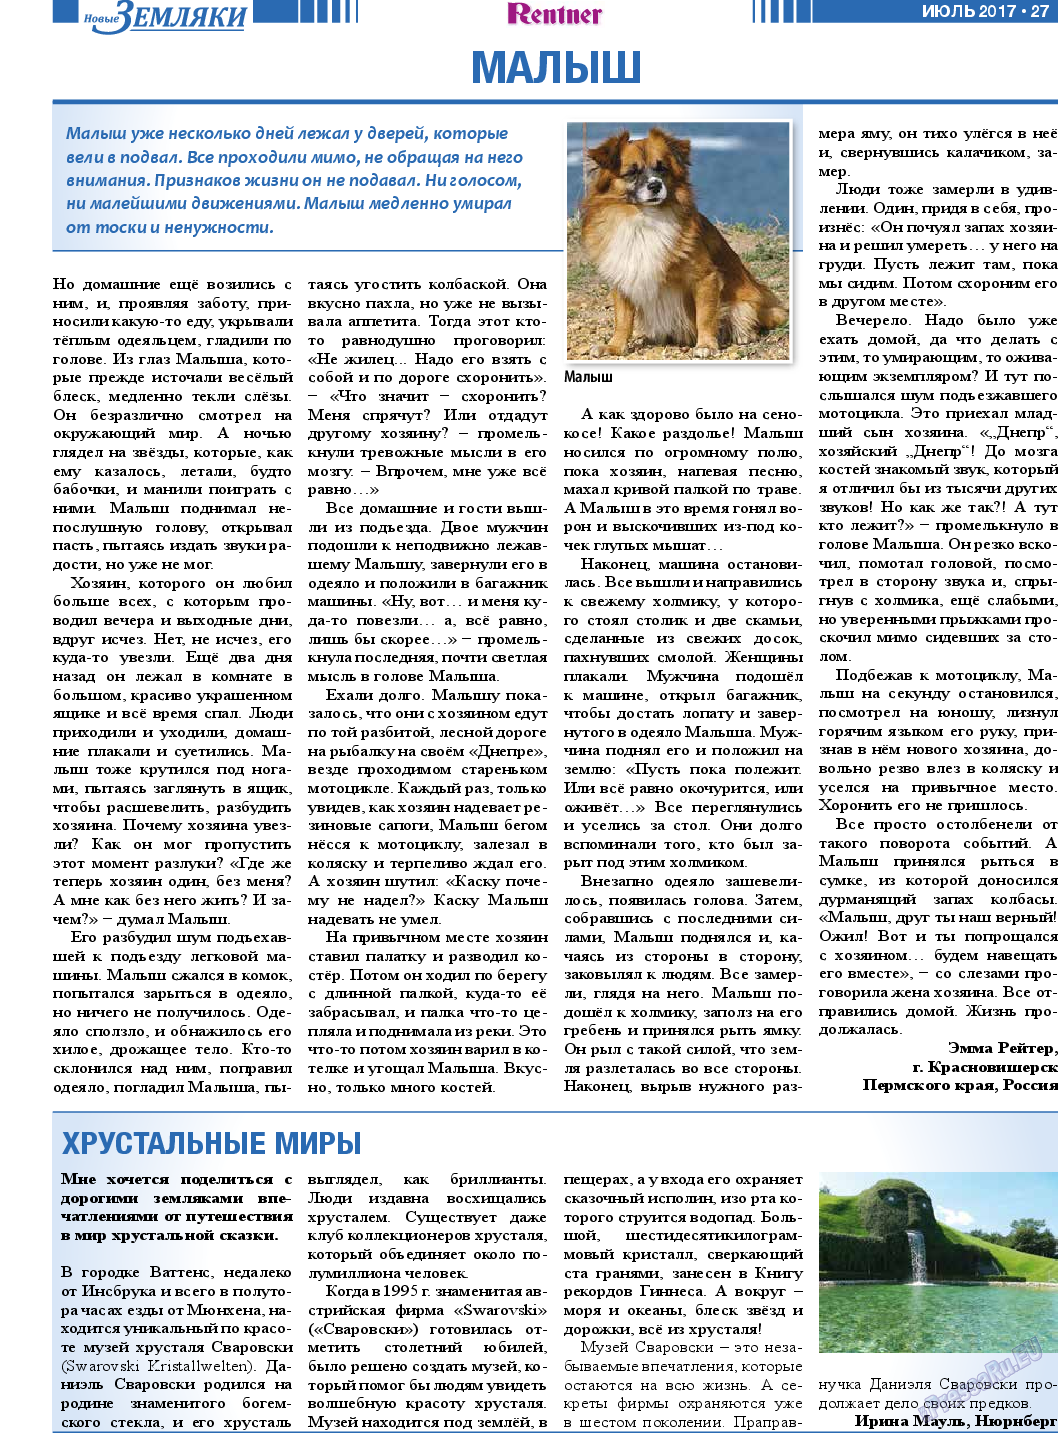 Новые Земляки, газета. 2017 №7 стр.27